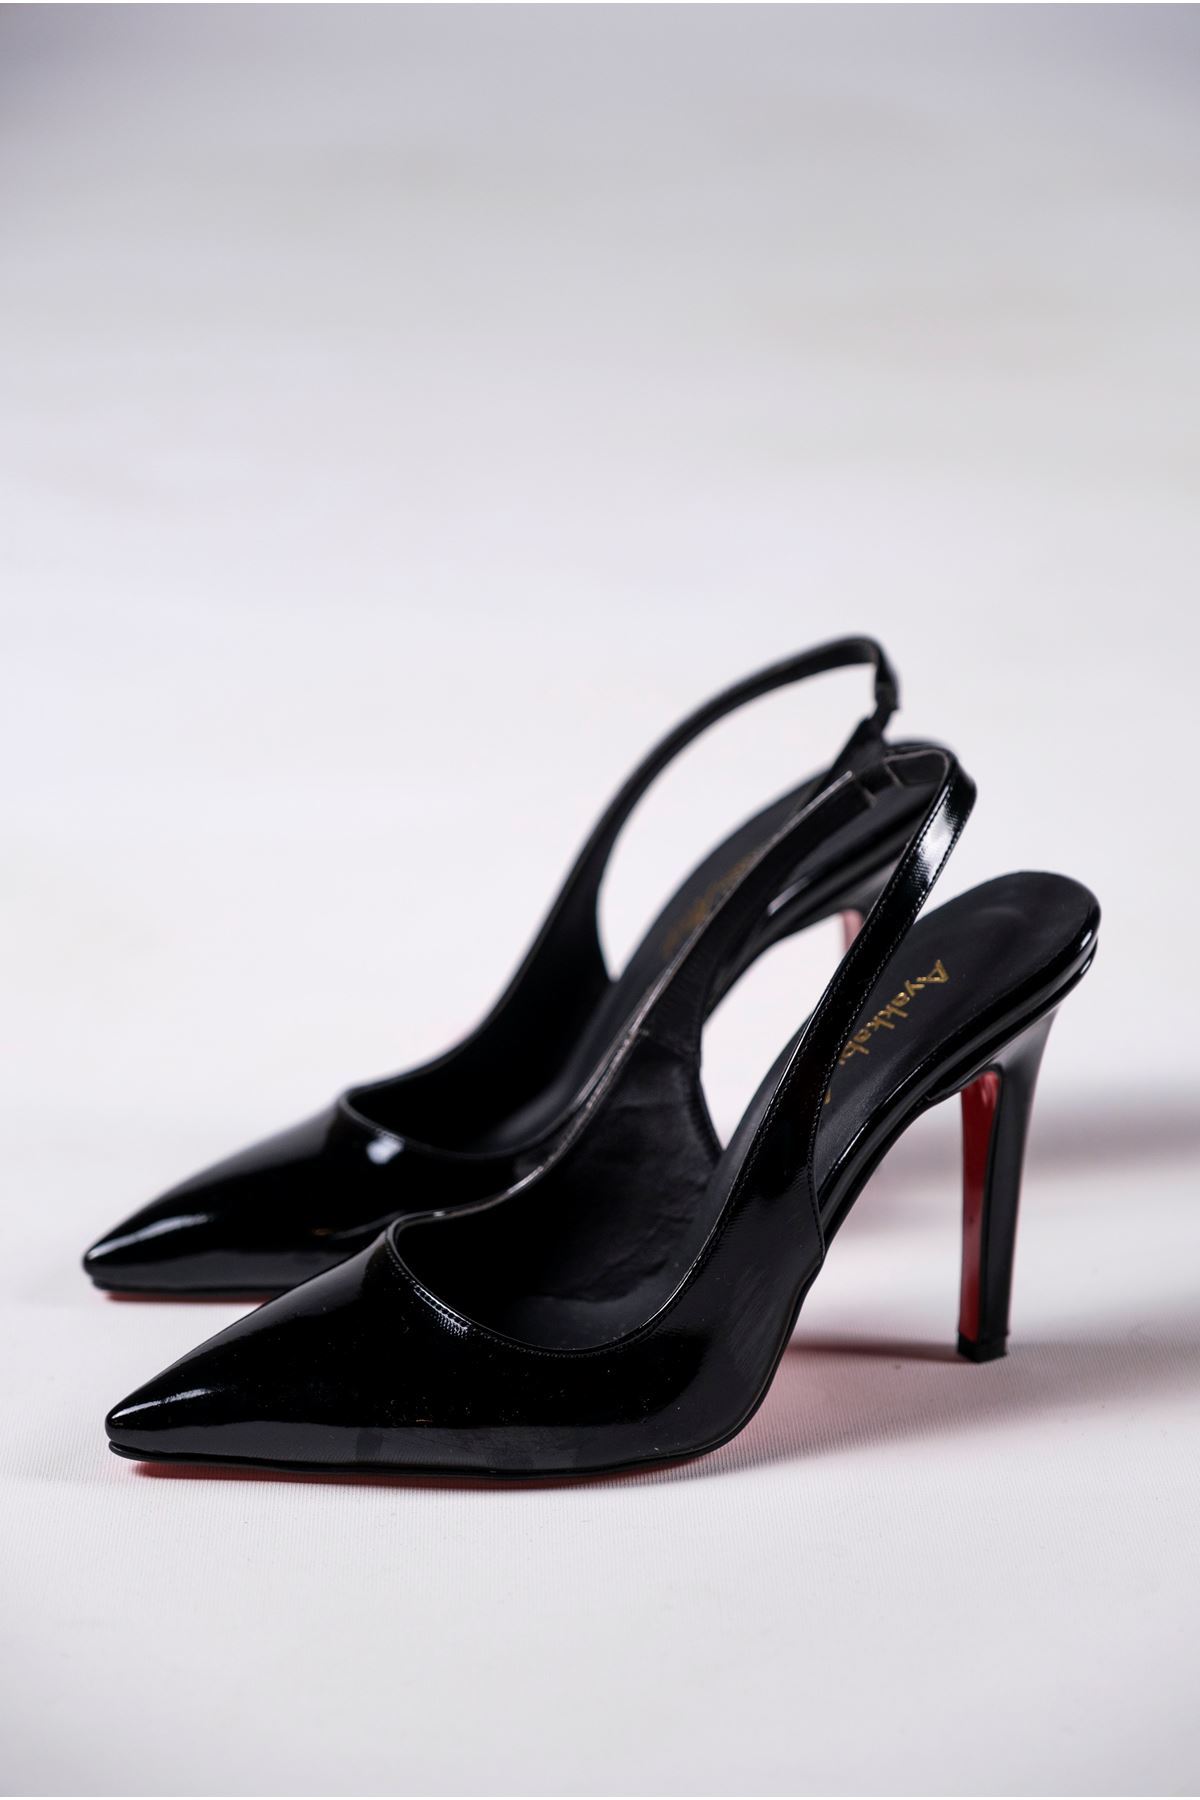 Siyah Rugan Kadın Topuklu Özel Tasarım Ayakkabı Stiletto Madison